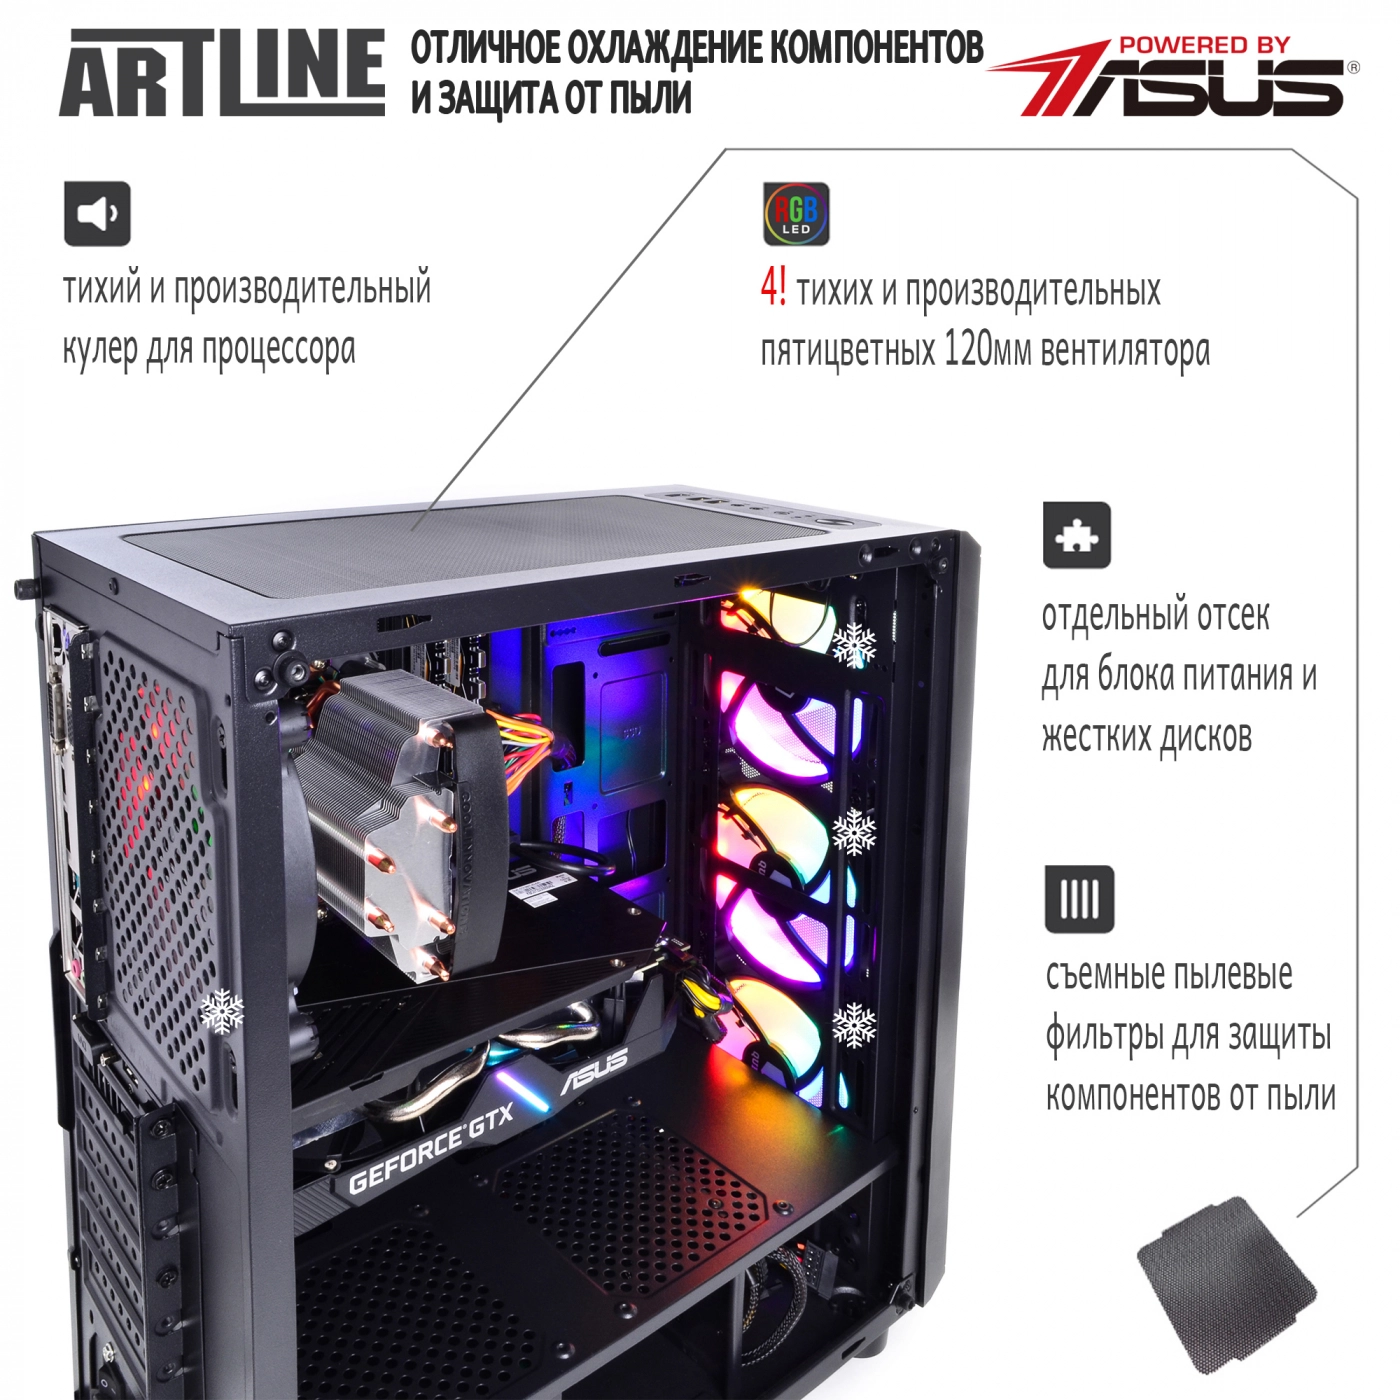 Купить Компьютер ARTLINE Gaming X33v04 - фото 4